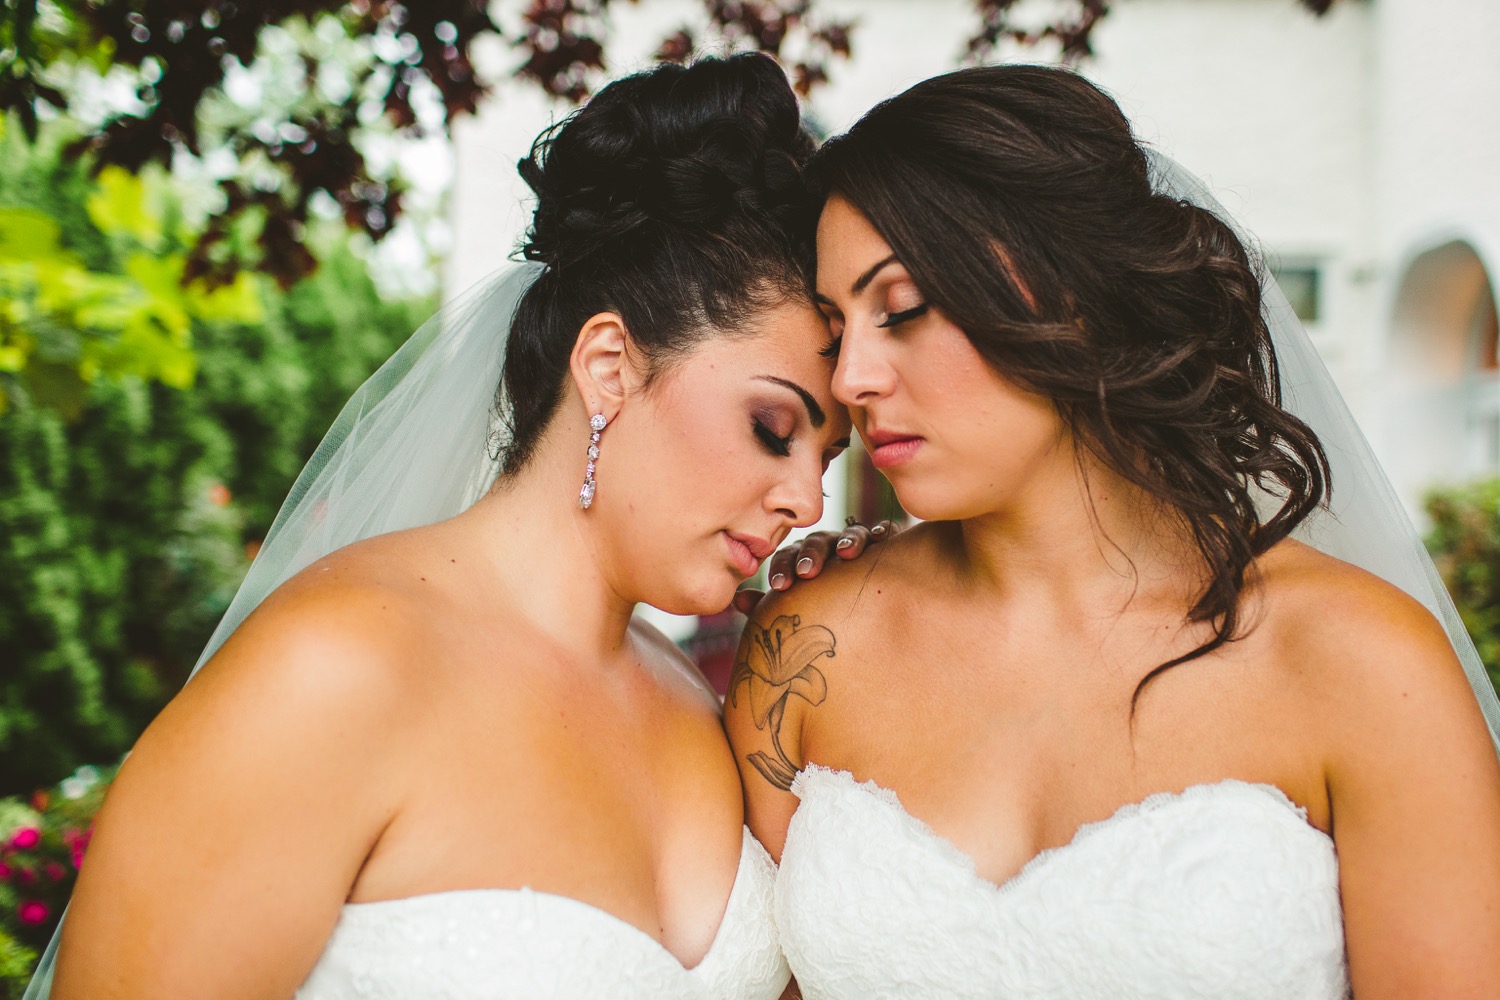 Lesbian Weddings Featured on Rock My Wedding